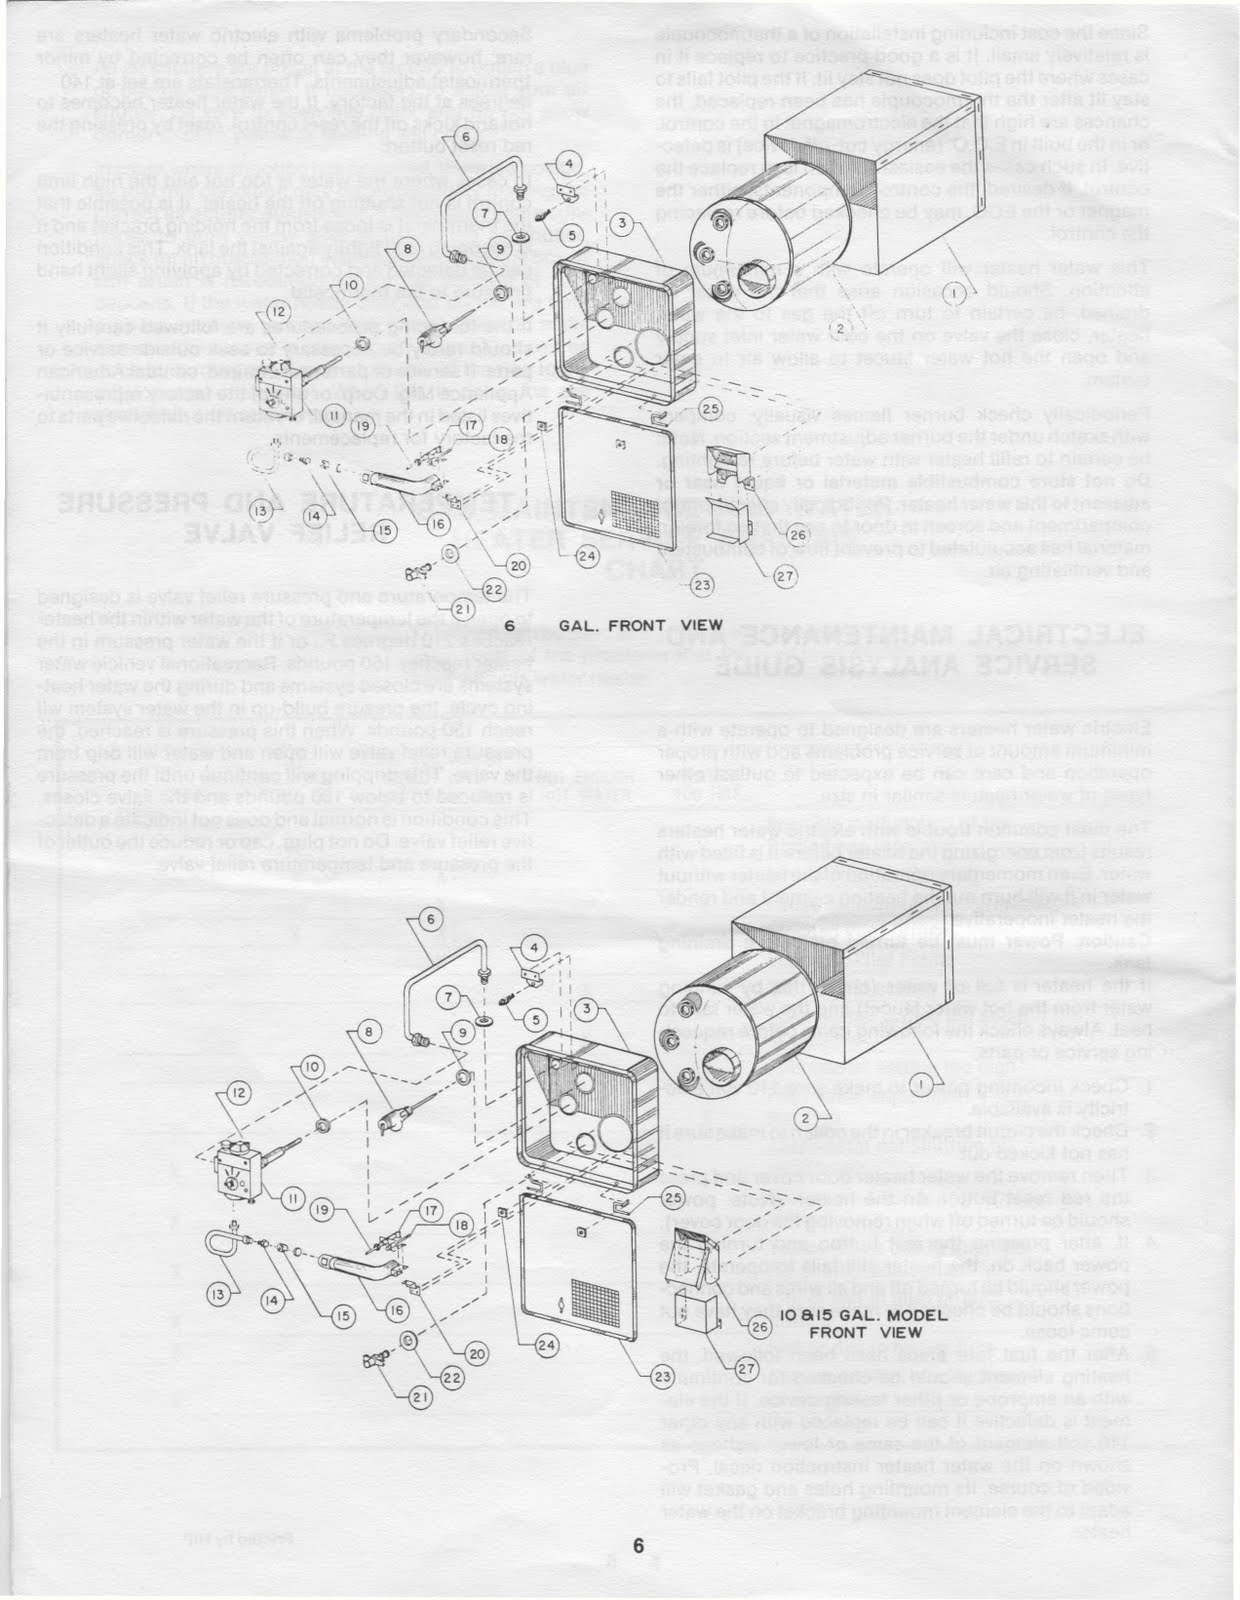 panasonic water heater installation guide